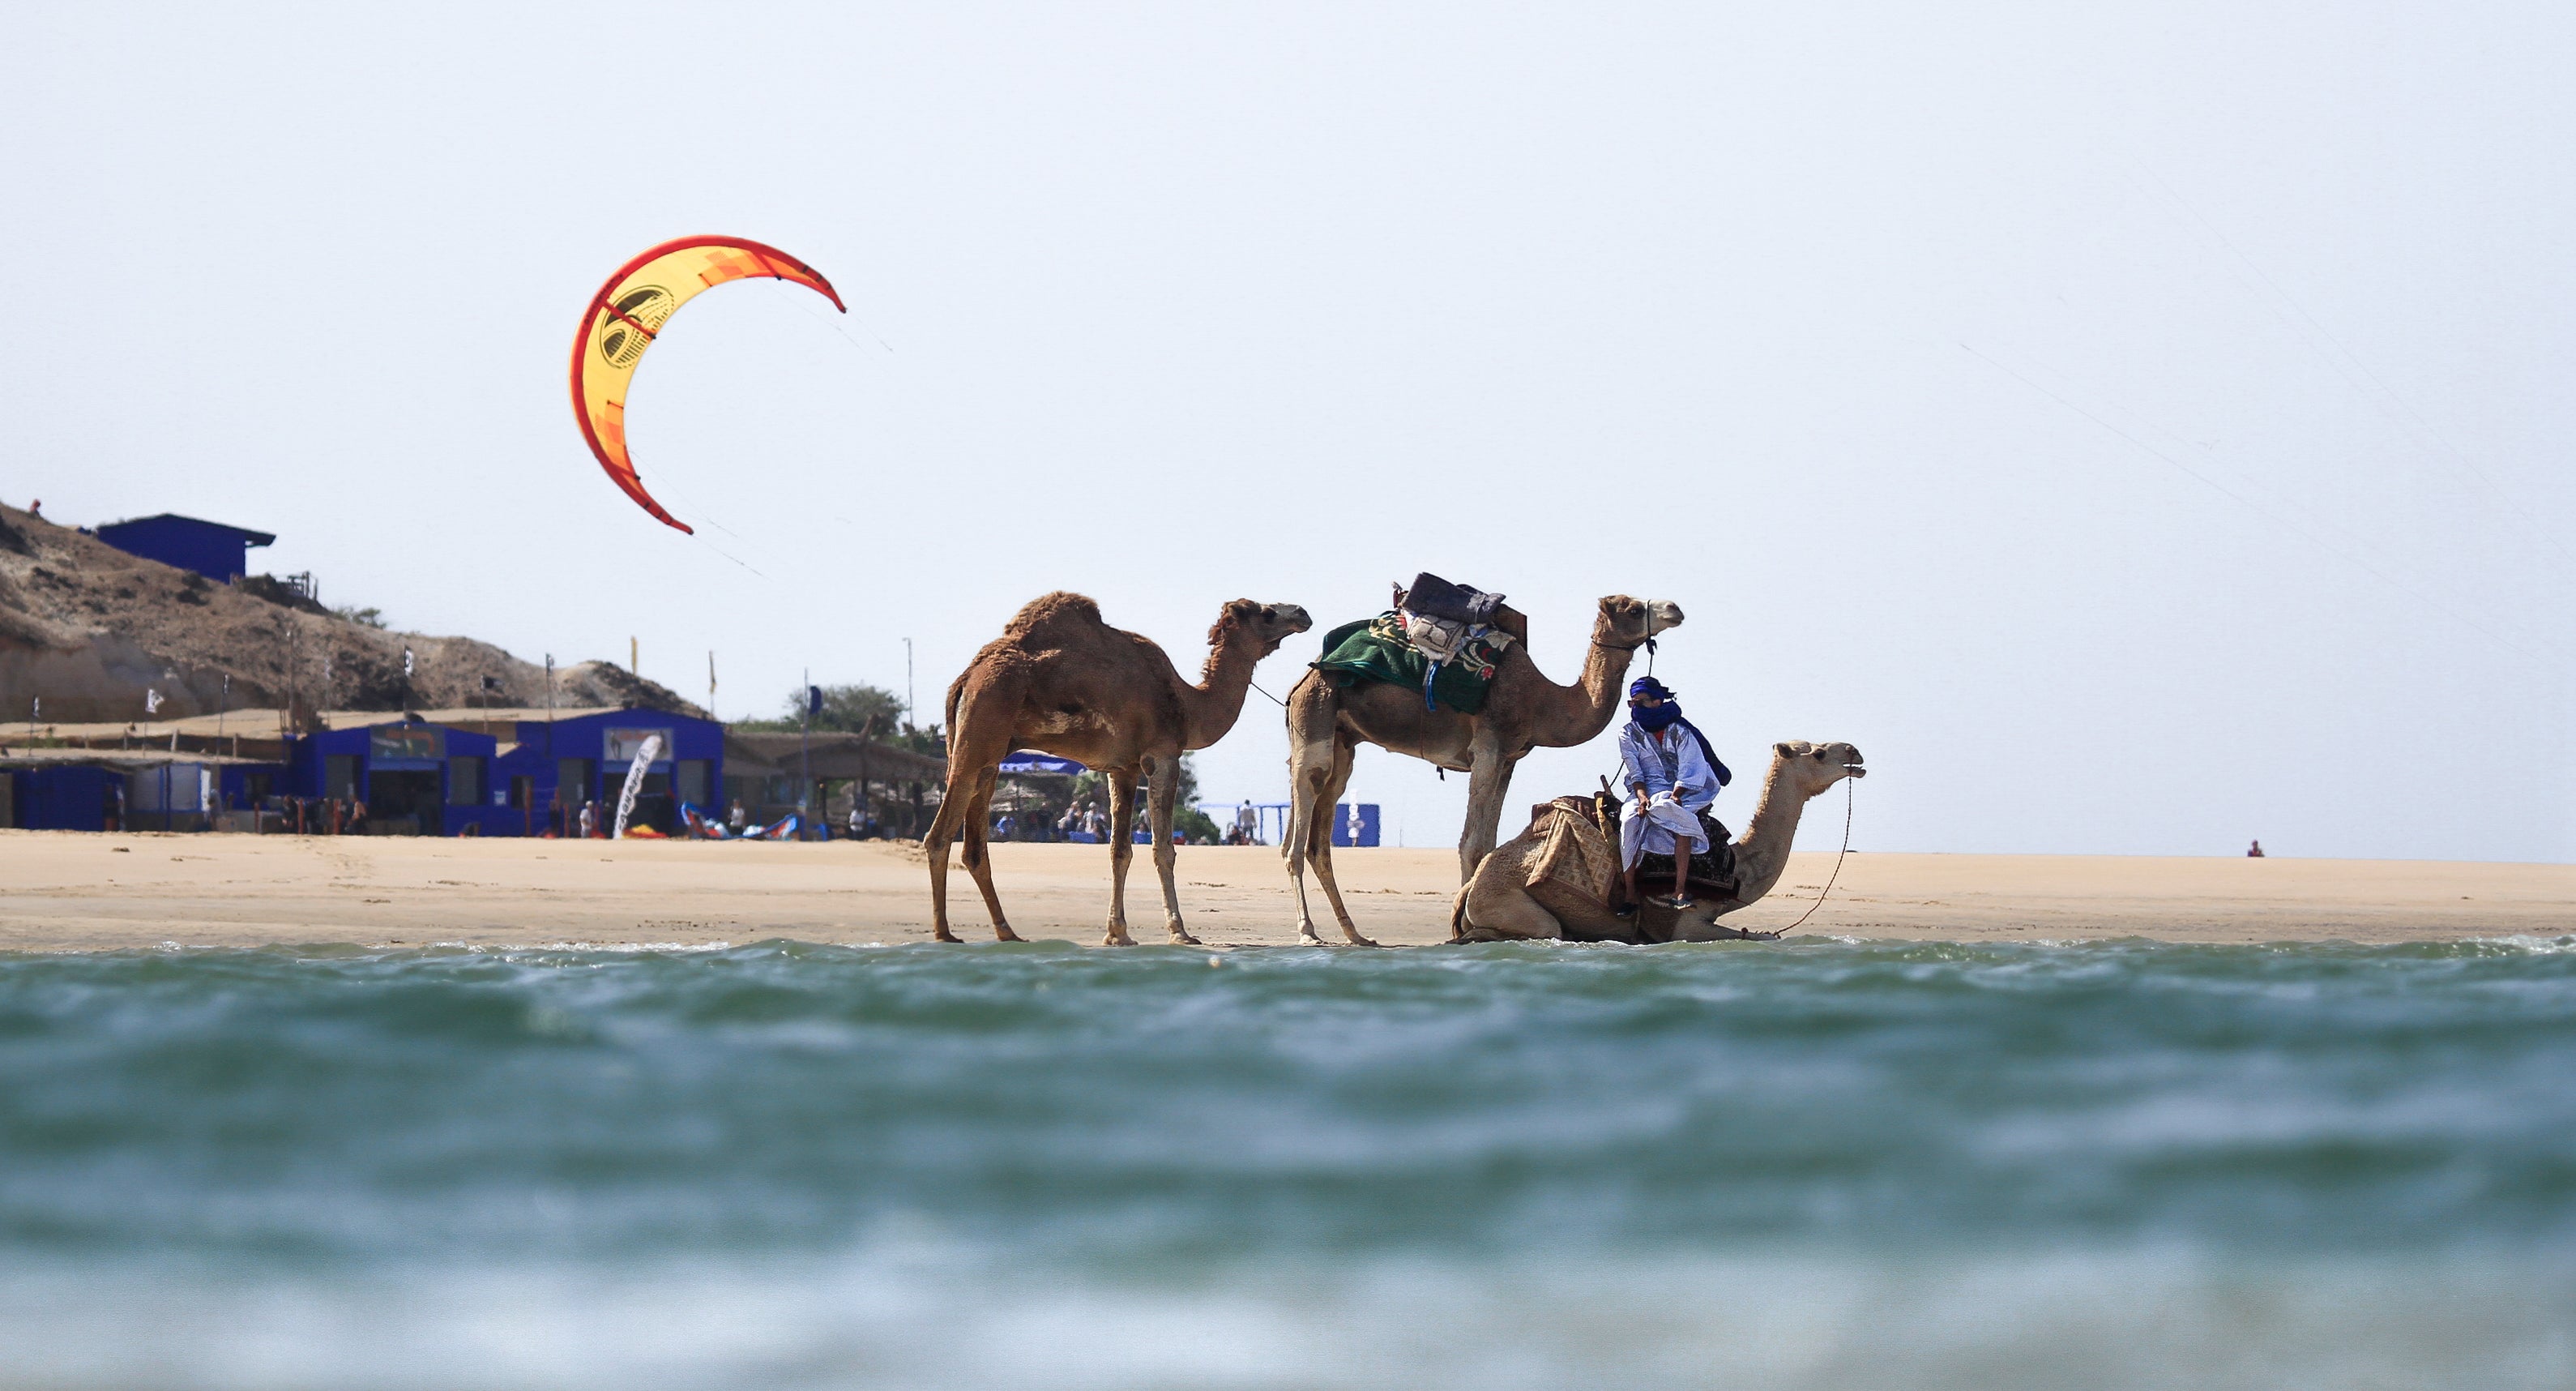 Camels & Kite